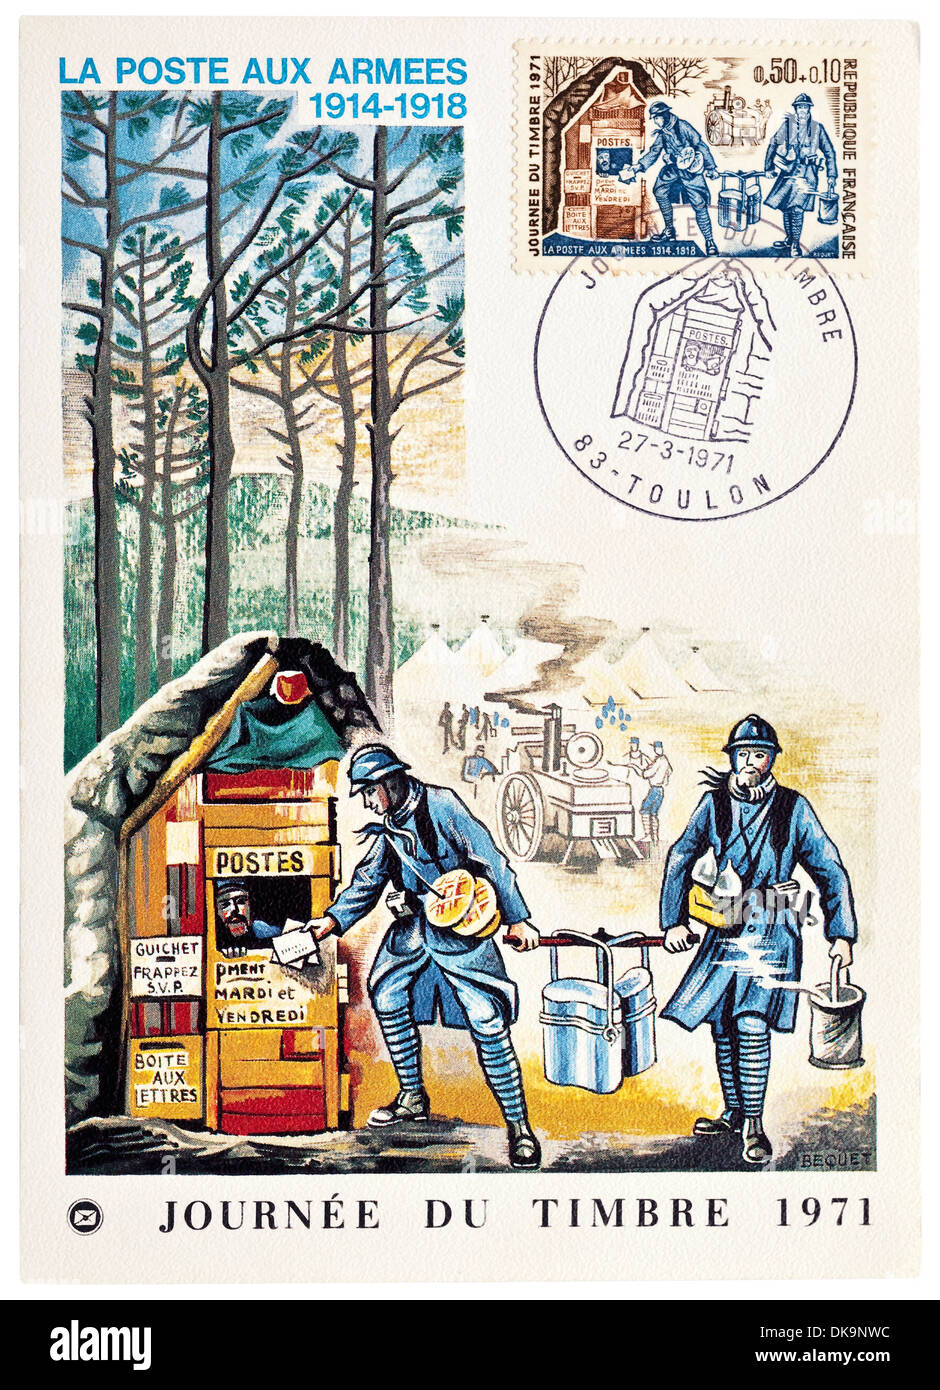 1971 cartolina francese raffigurante esercito 1914-1918 Post - 'Journée du Timbre" (Giornata del francobollo). Foto Stock